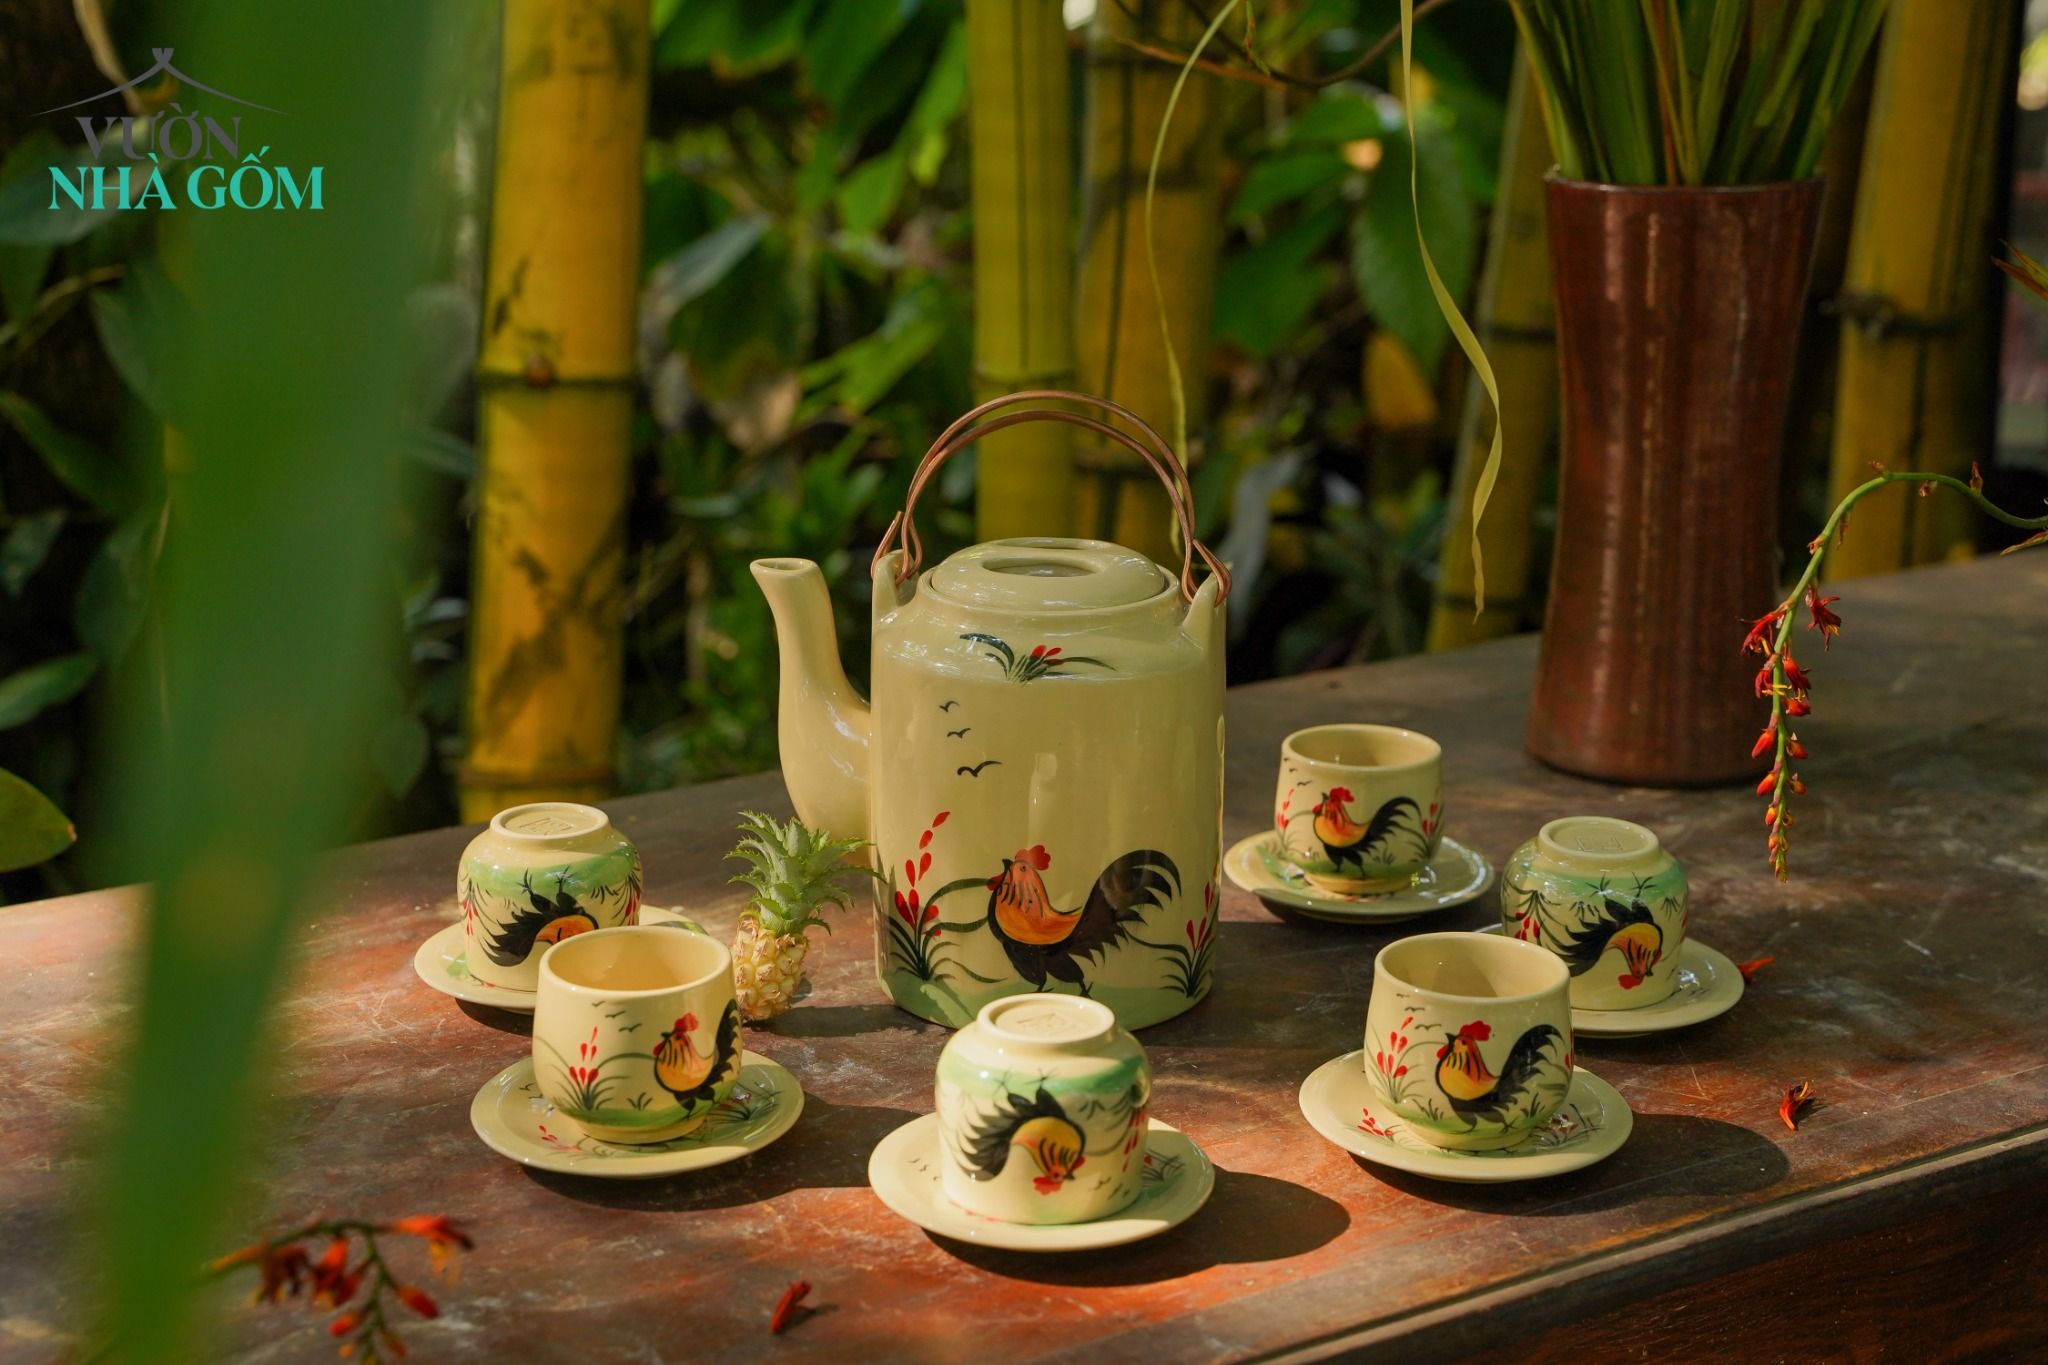  Bộ bình trà vẽ gà trống, họa tiết dân gian vẽ thủ công, gốm Thủ Biên thực hiện bởi Cô Yến 